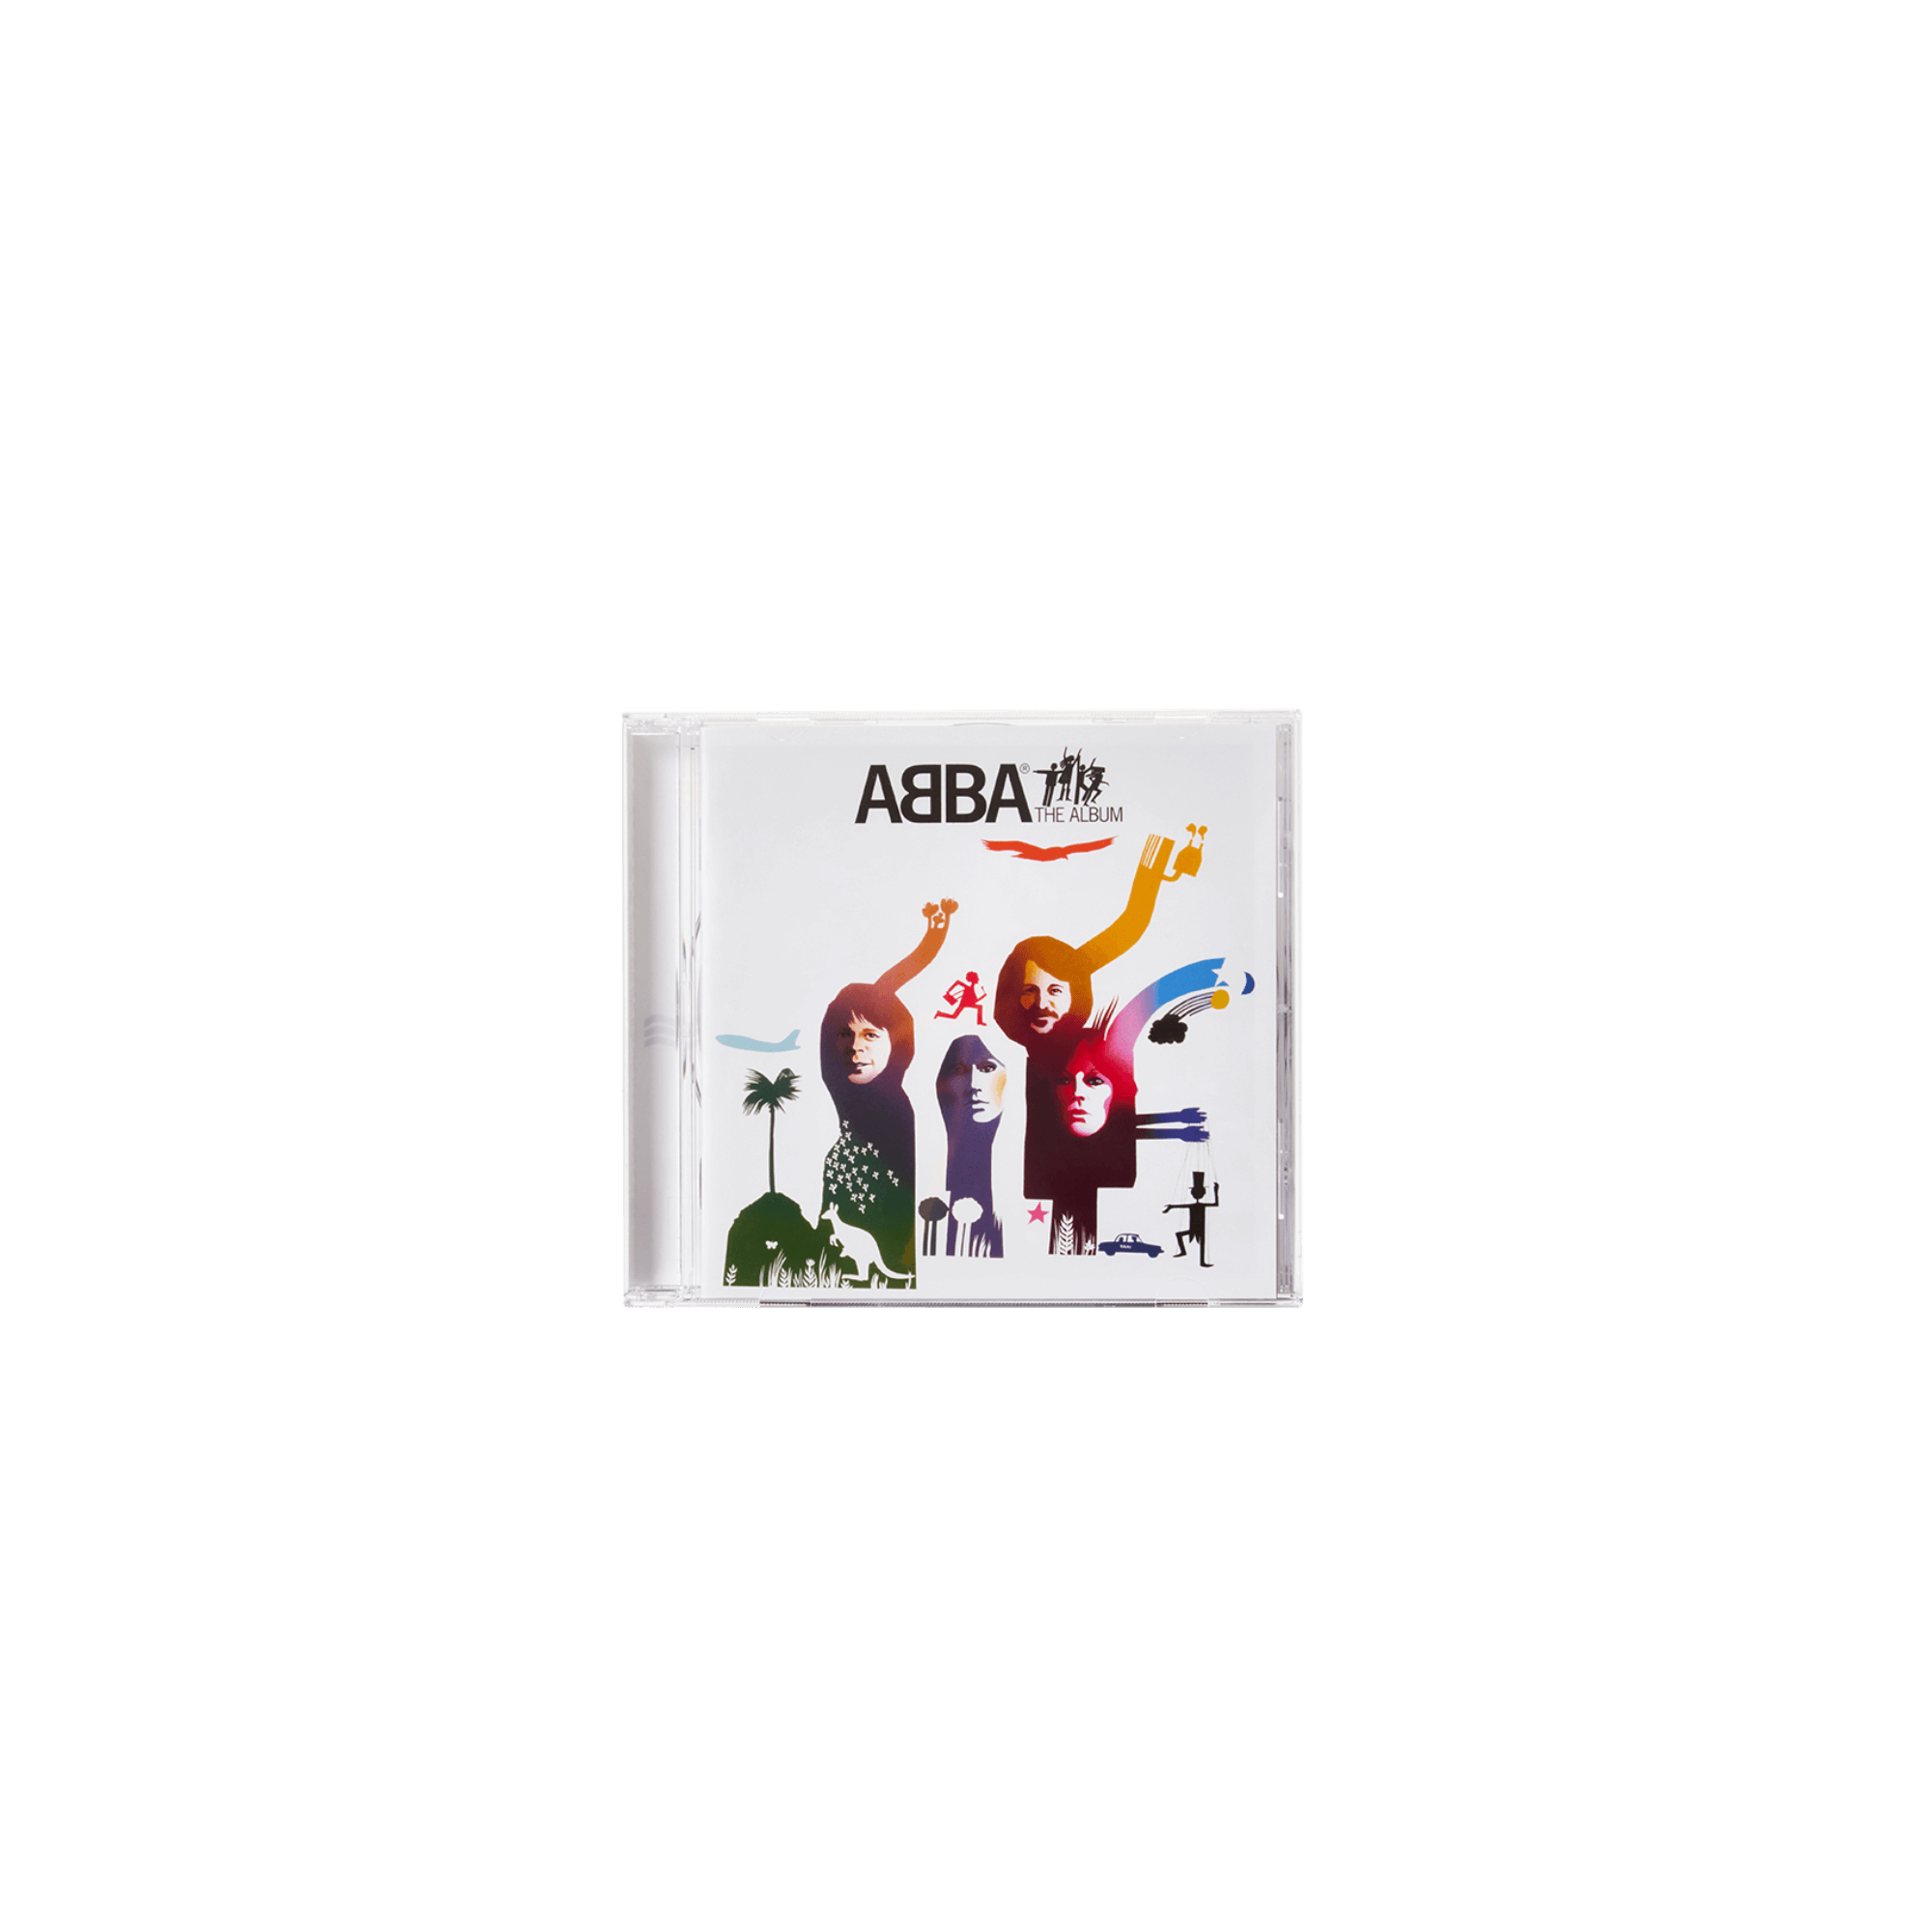 ABBA The Album CD